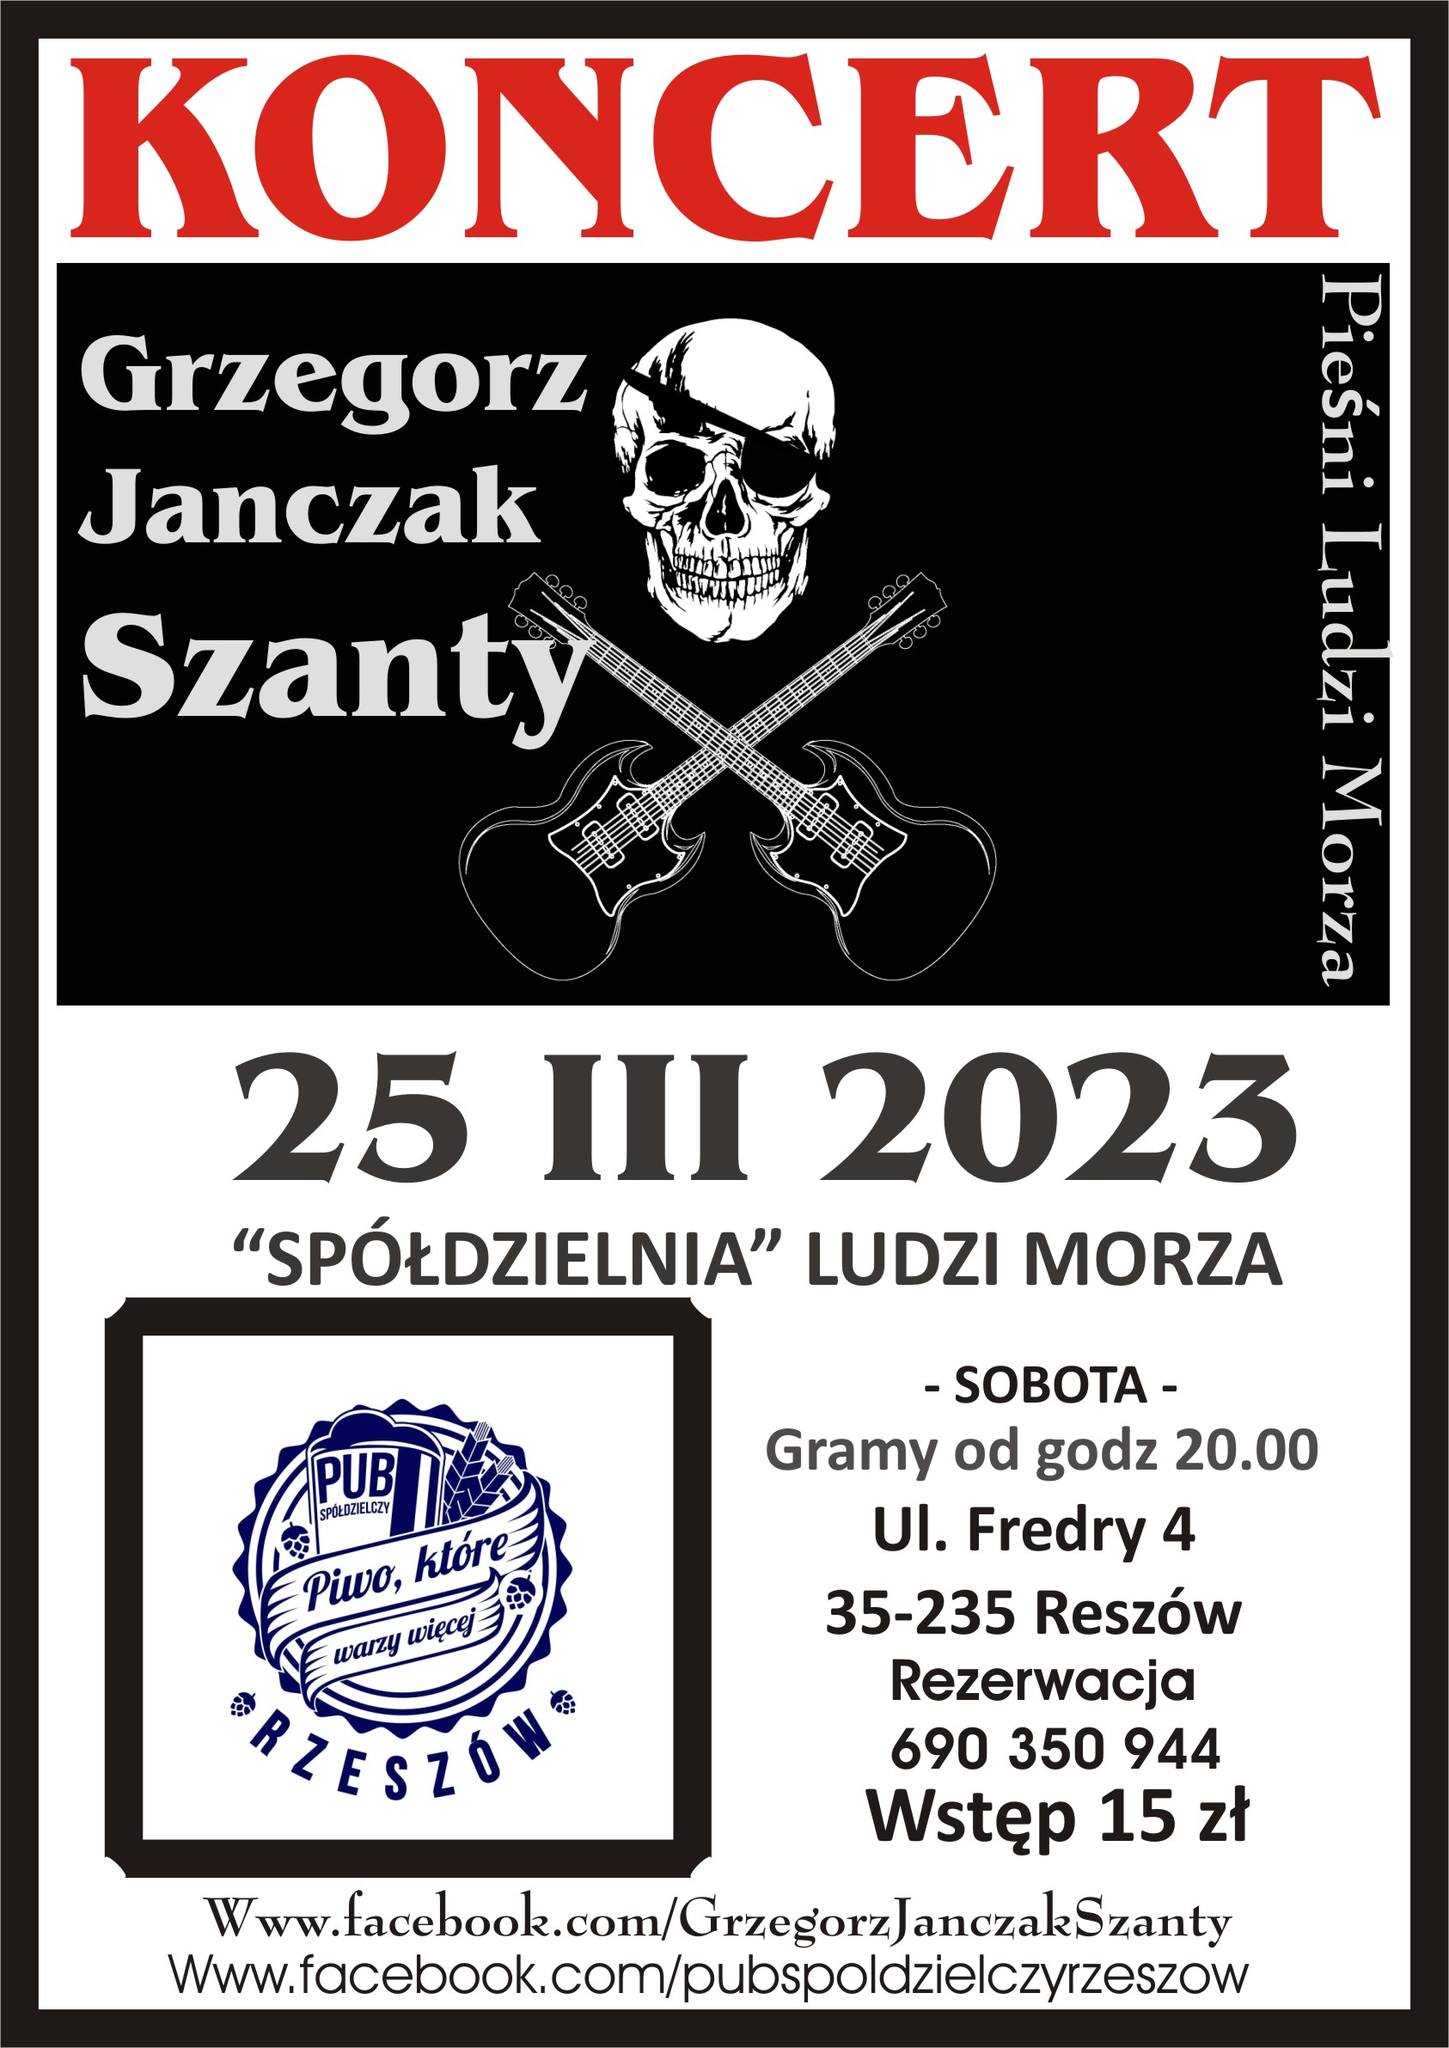 Grzegorz Janczak Szanty - SPÓDZIELNIA Ludzi Morza - Koncert.